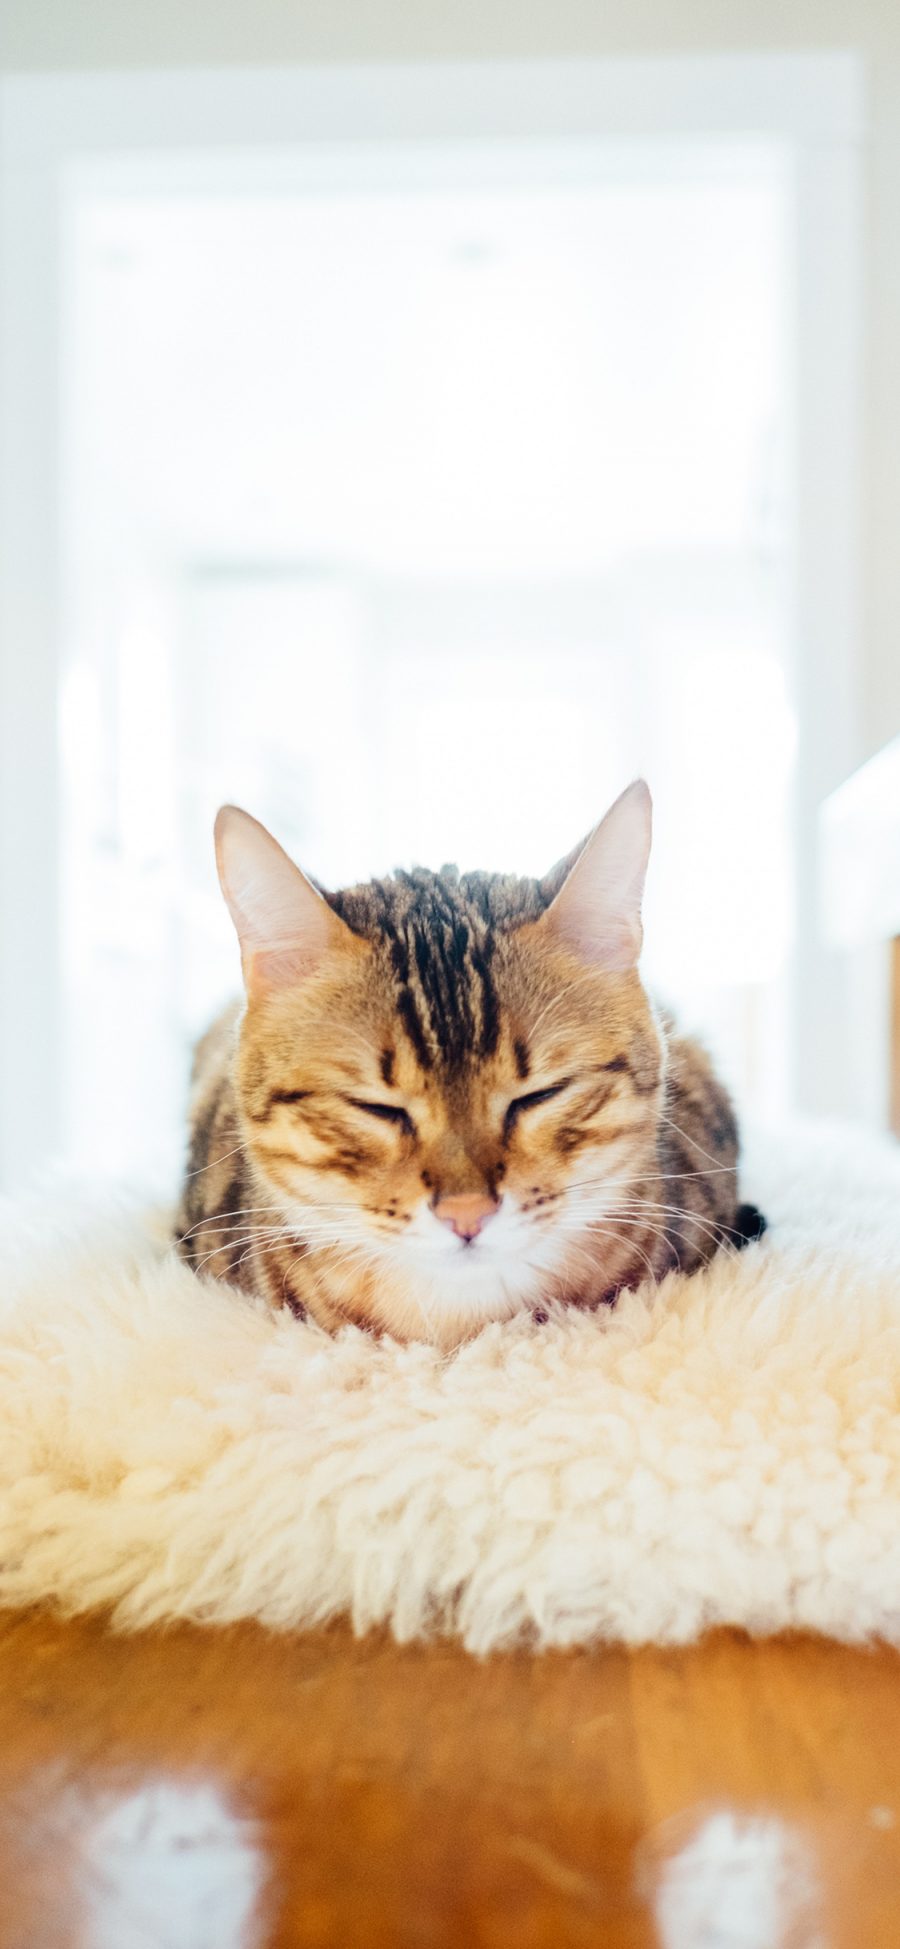 [2436×1125]猫咪 宠物 眯眼 地毯 苹果手机壁纸图片